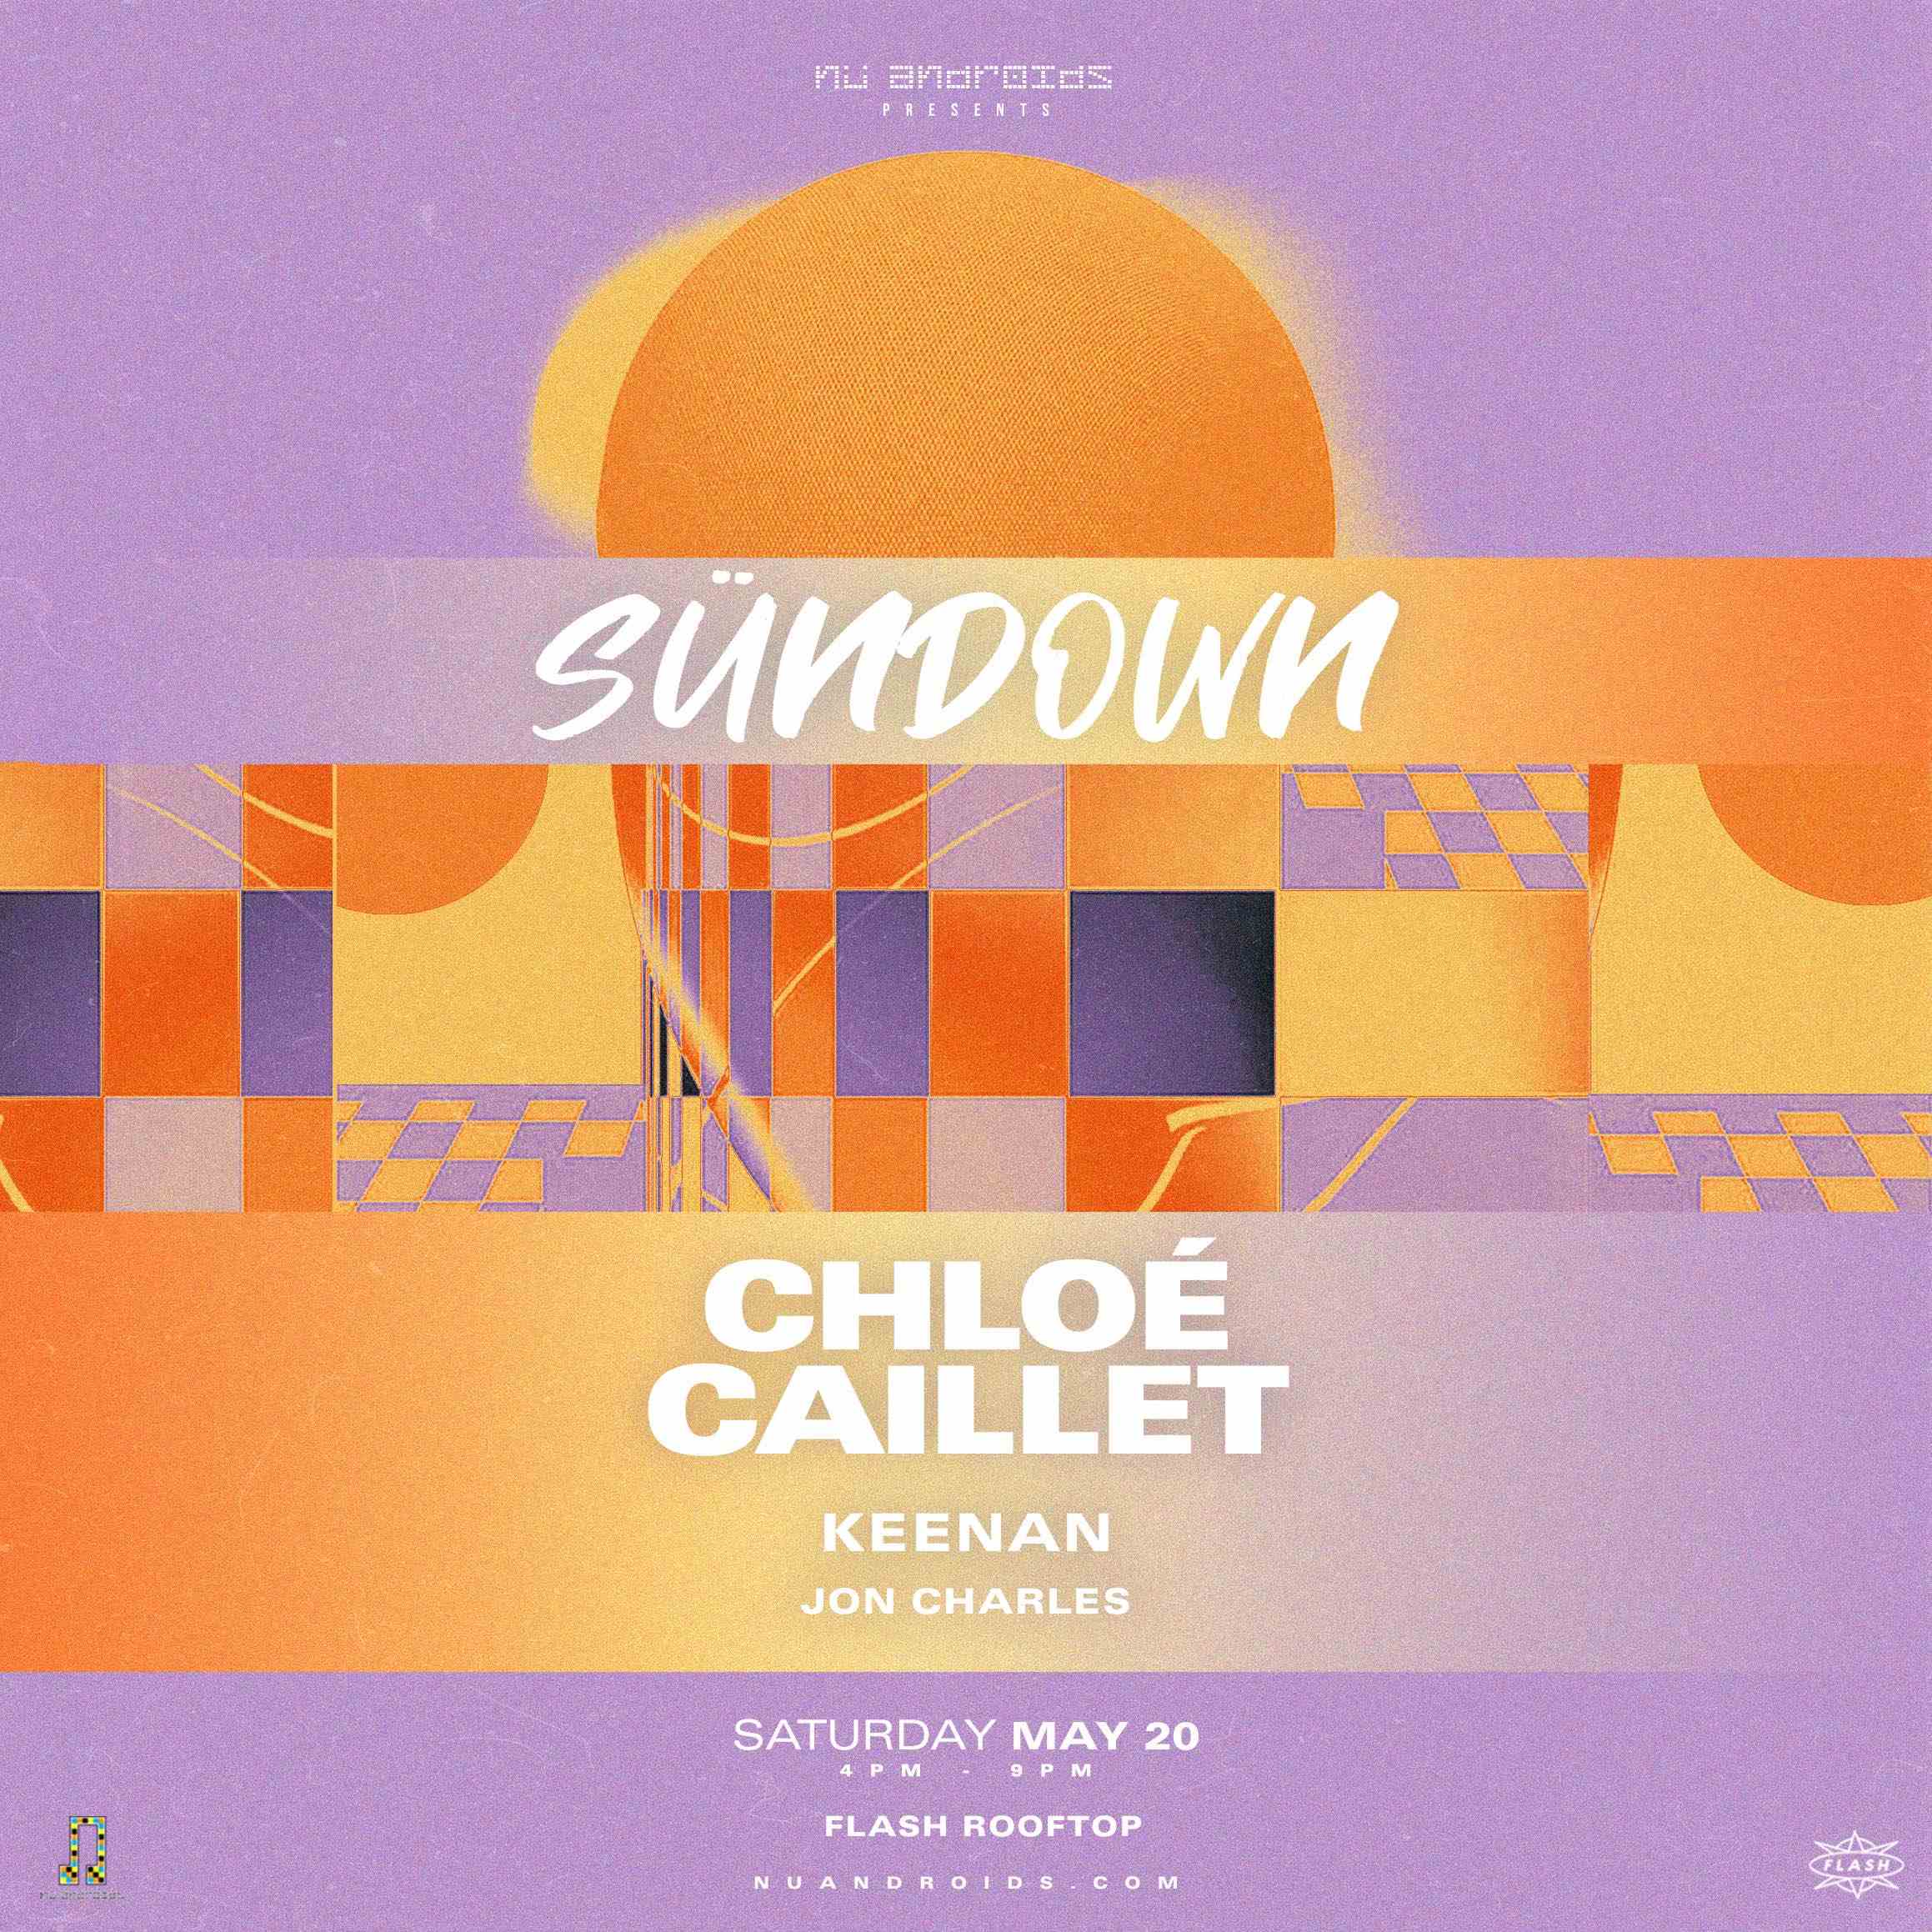 Event image for Nü Androids Presents SünDown: Chloé Caillet (21+)